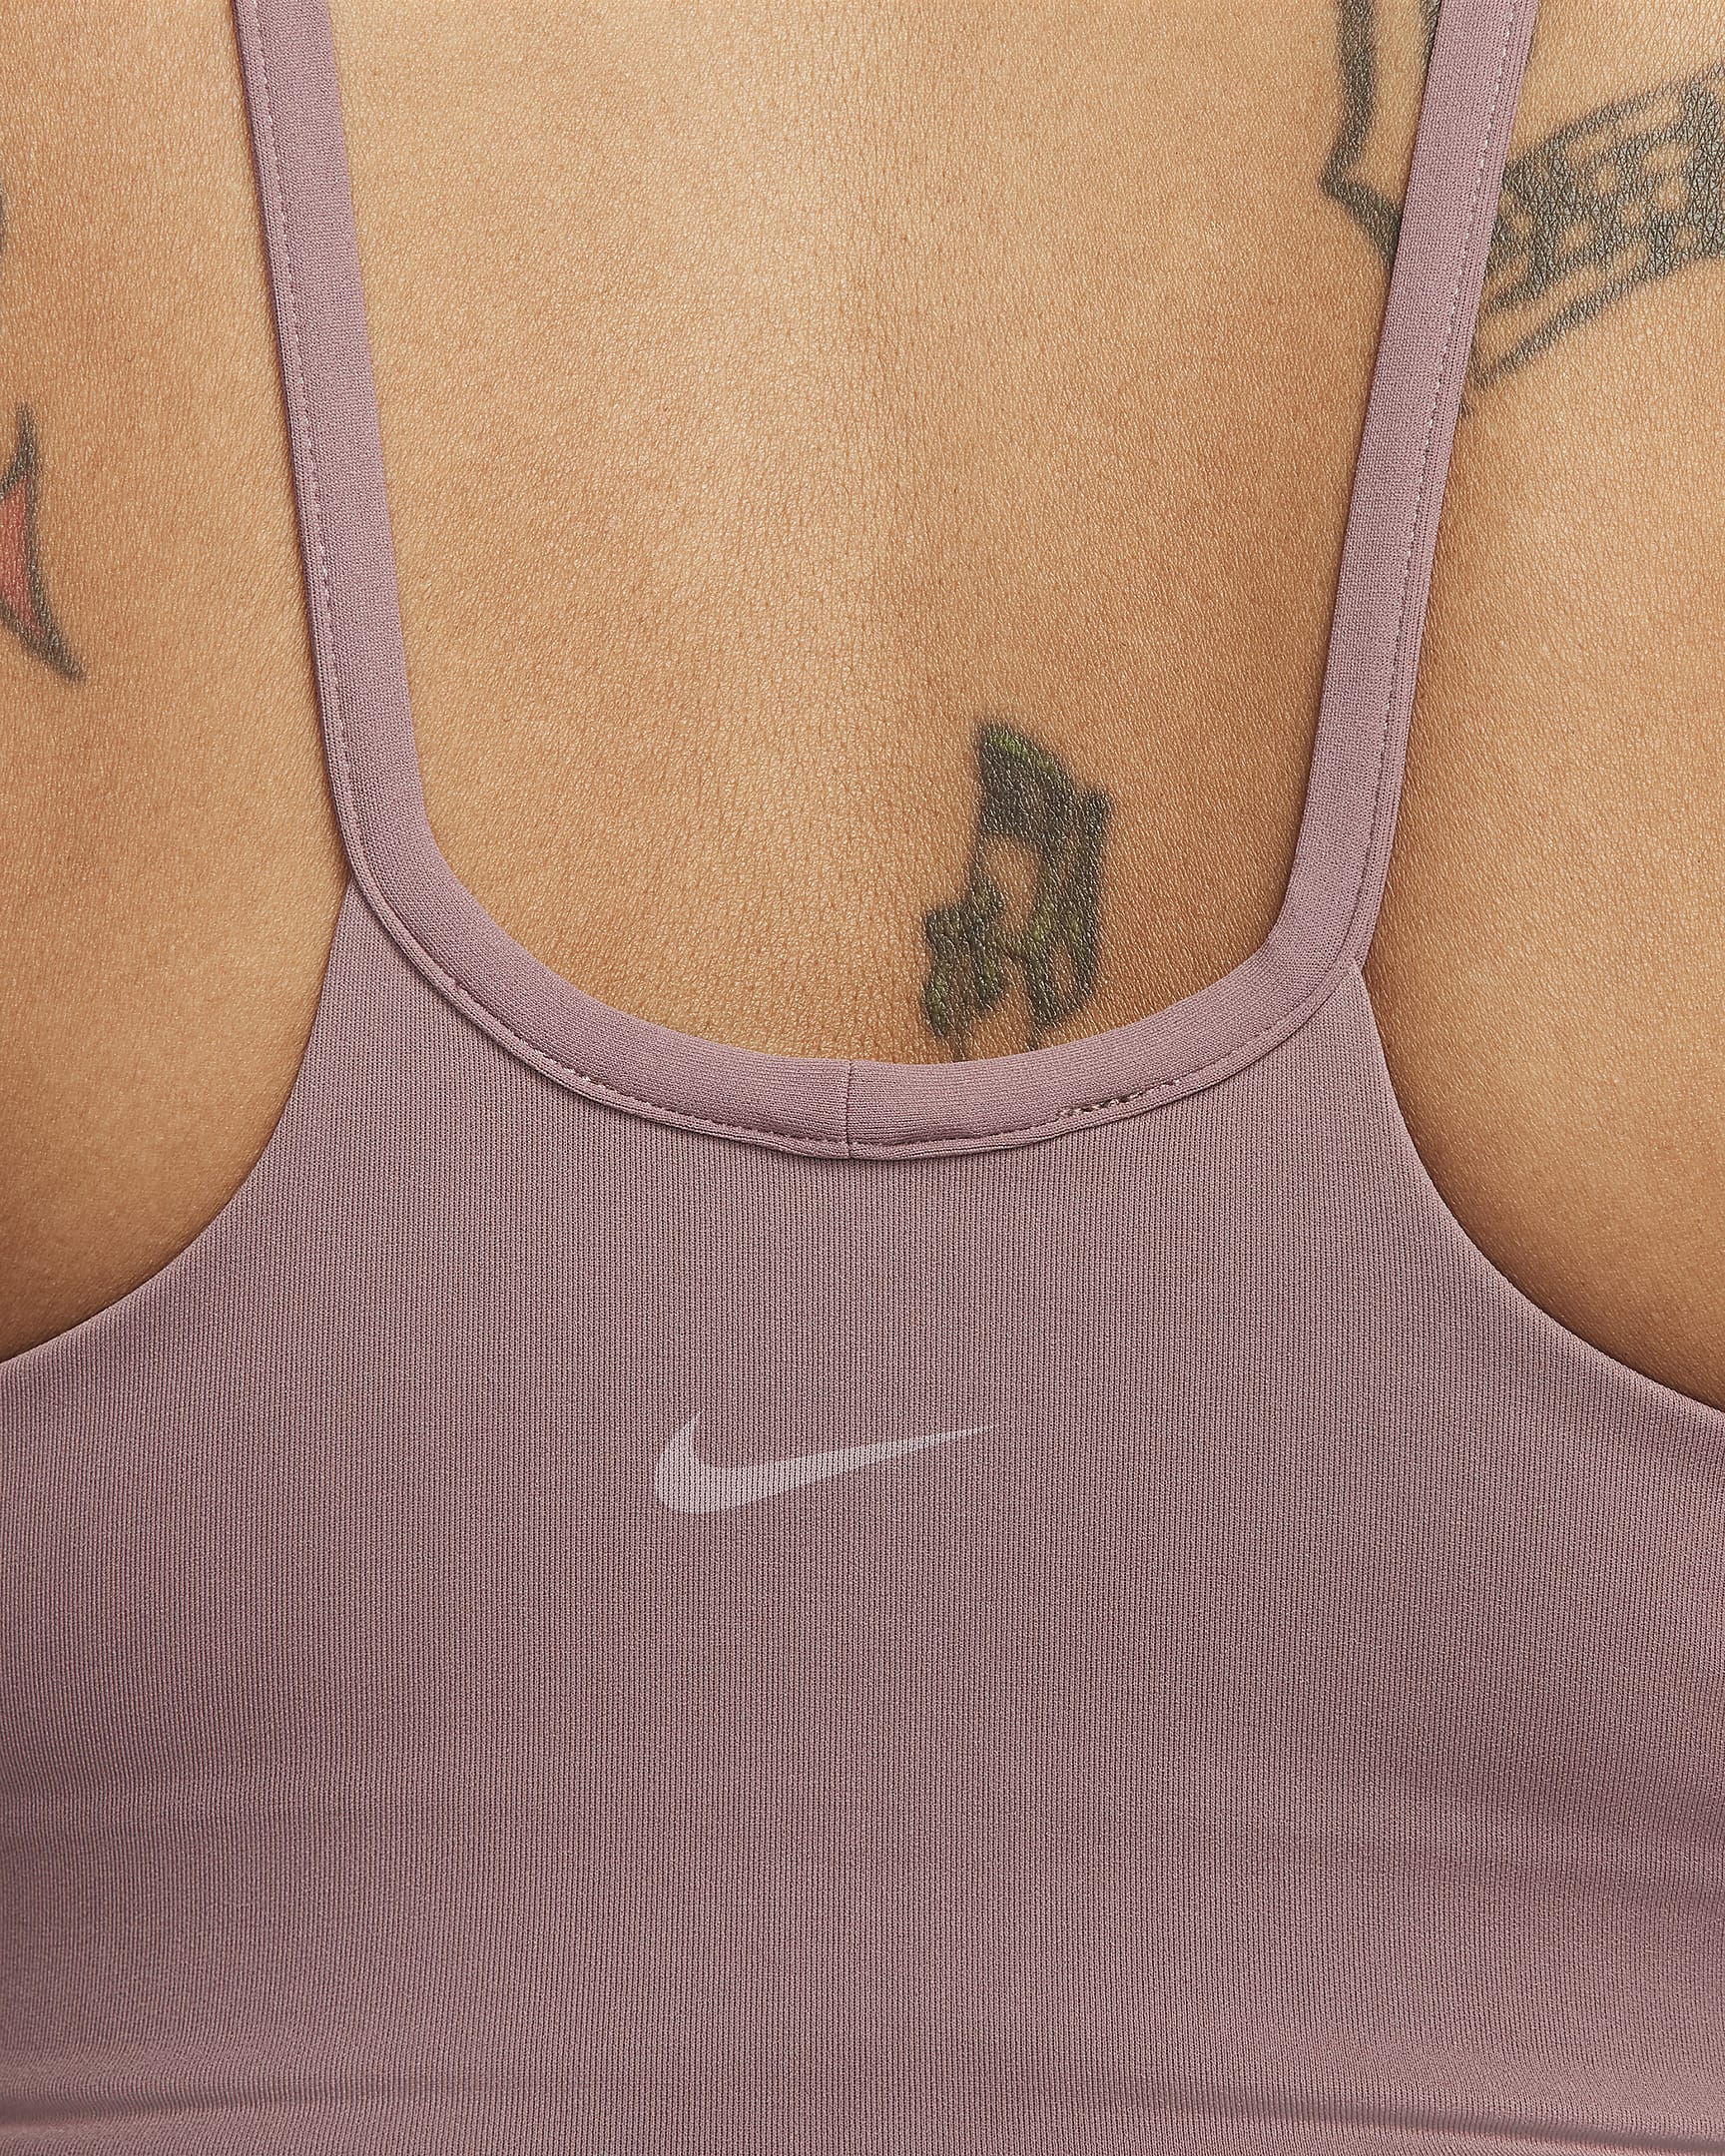 Débardeur Nike Zenvy Dri-FIT pour femme - Smokey Mauve/Blanc